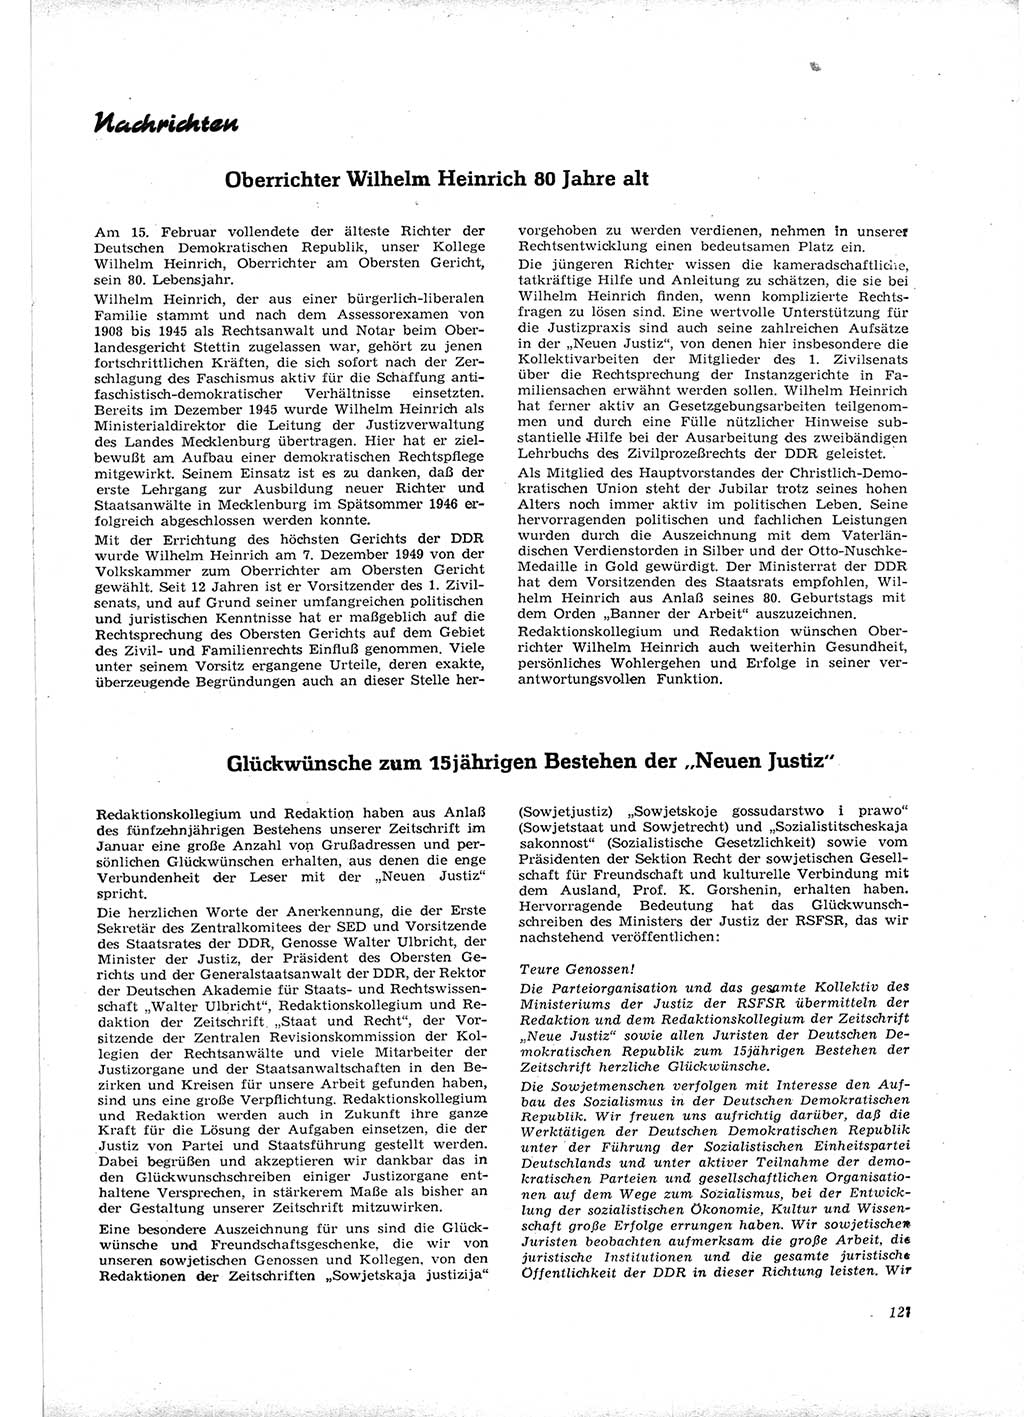 Neue Justiz (NJ), Zeitschrift für Recht und Rechtswissenschaft [Deutsche Demokratische Republik (DDR)], 16. Jahrgang 1962, Seite 127 (NJ DDR 1962, S. 127)